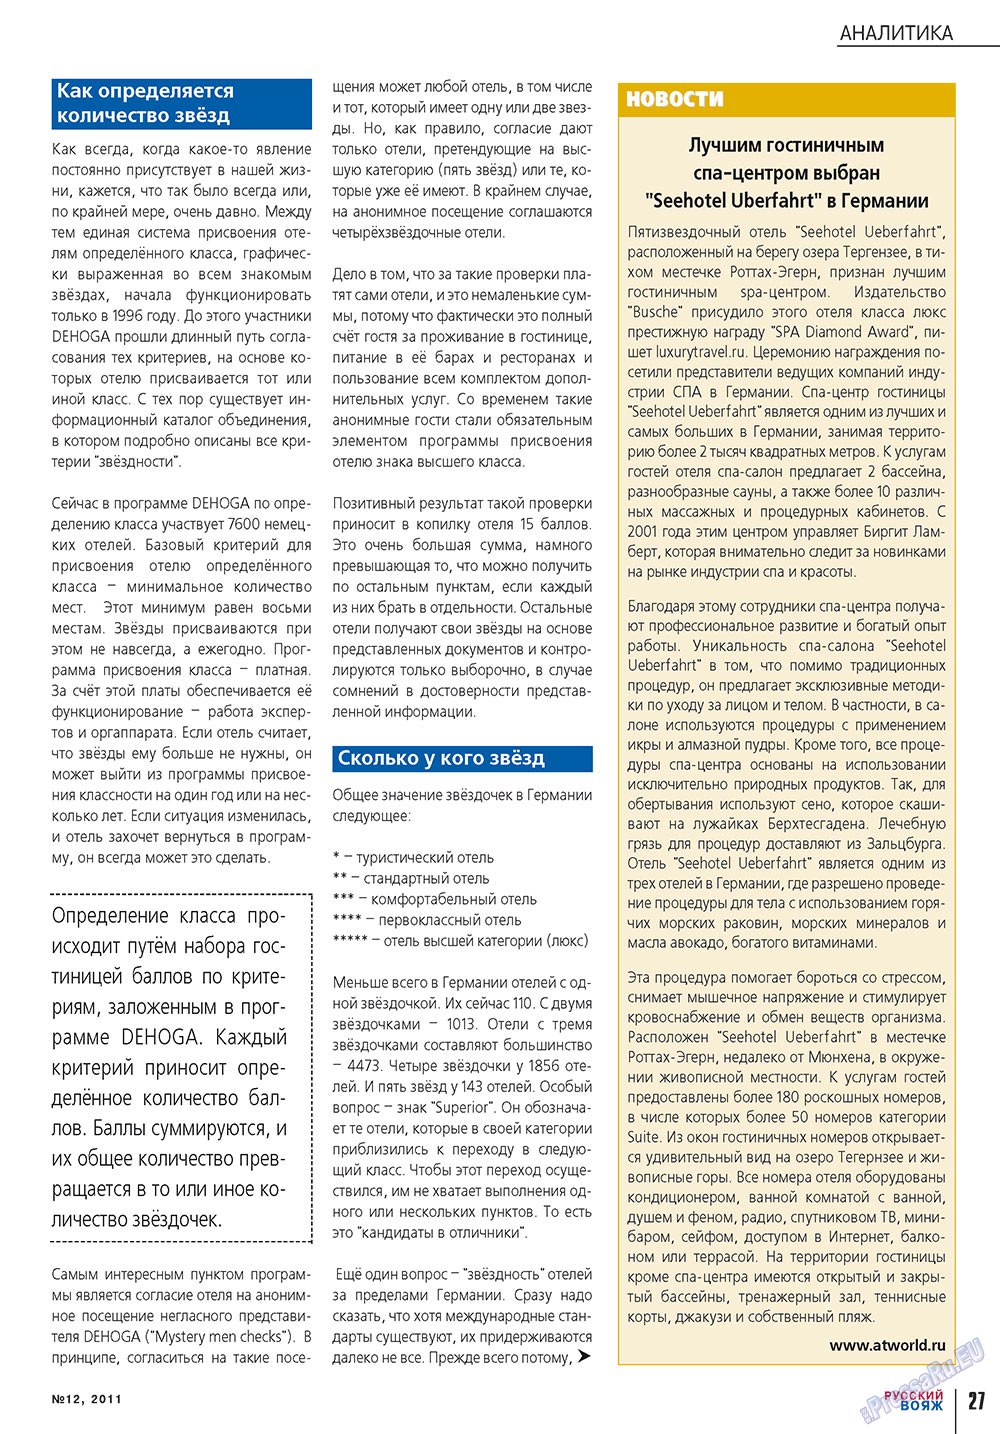 Русский вояж (журнал). 2011 год, номер 12, стр. 27